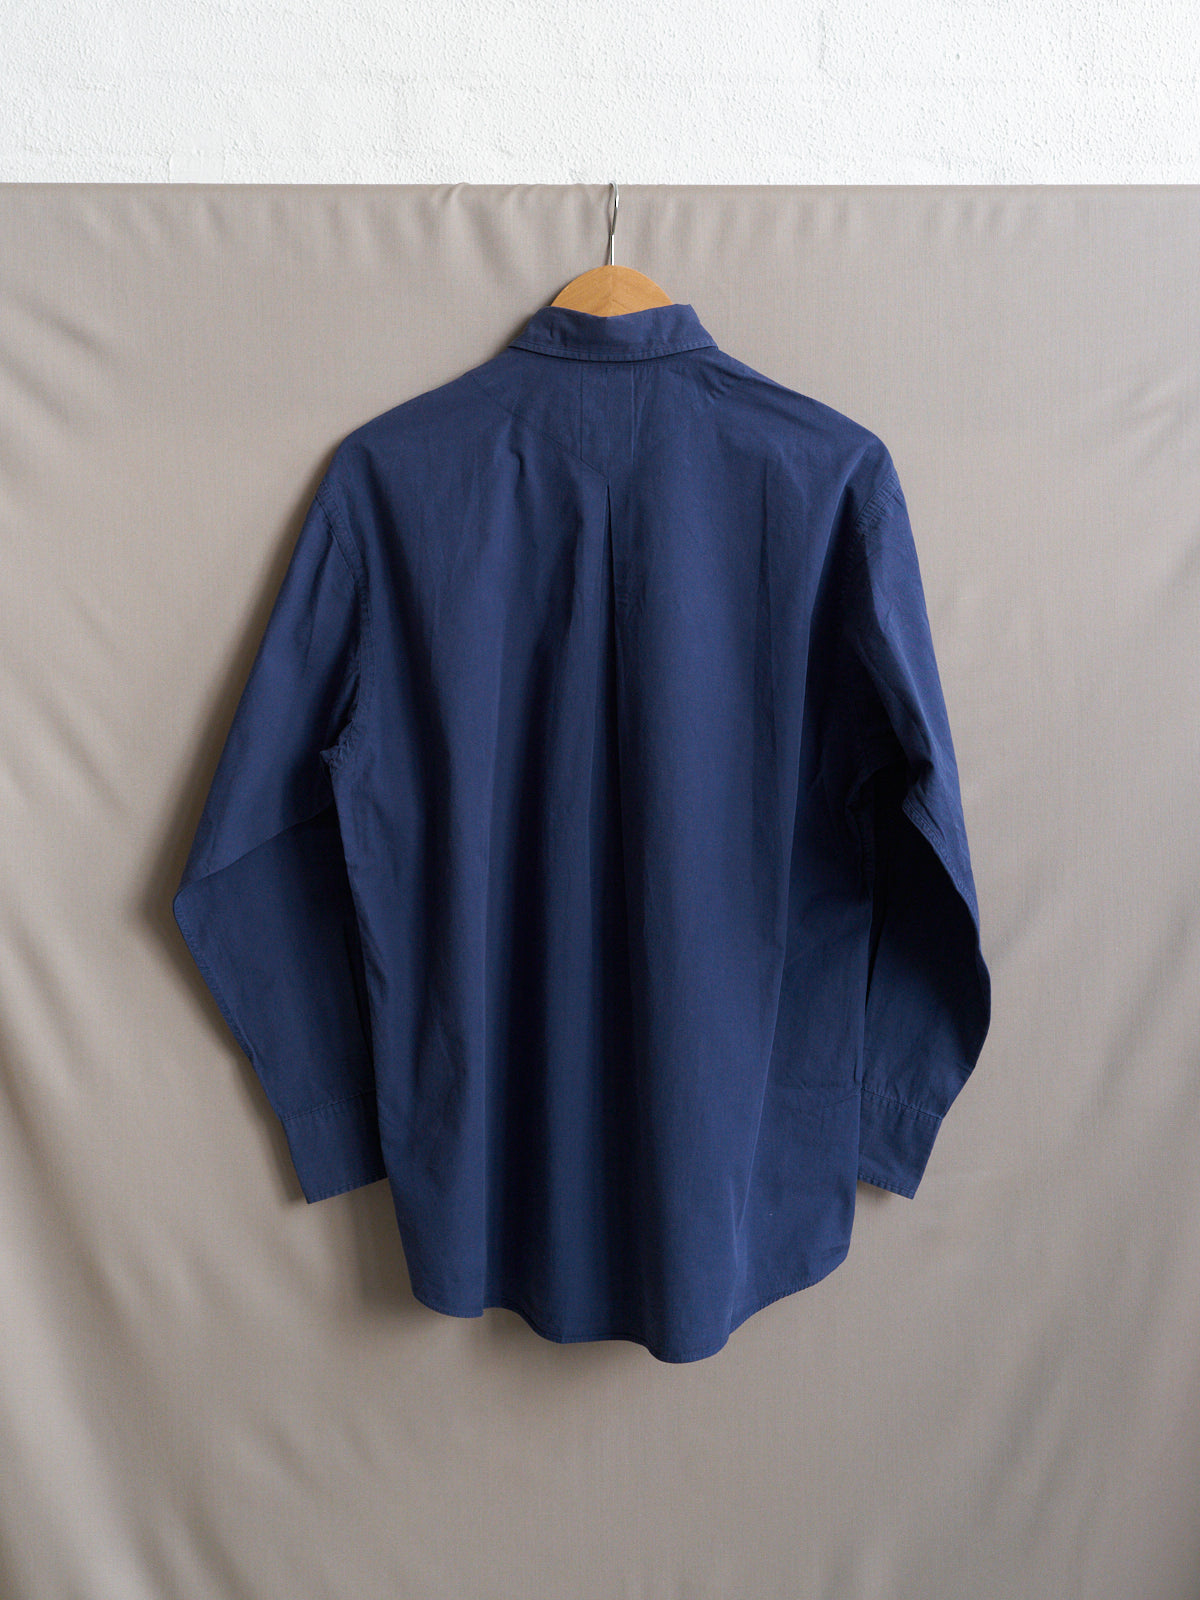 kenzo blue cotton floral pot plant print longsleeve shirt - 1990s